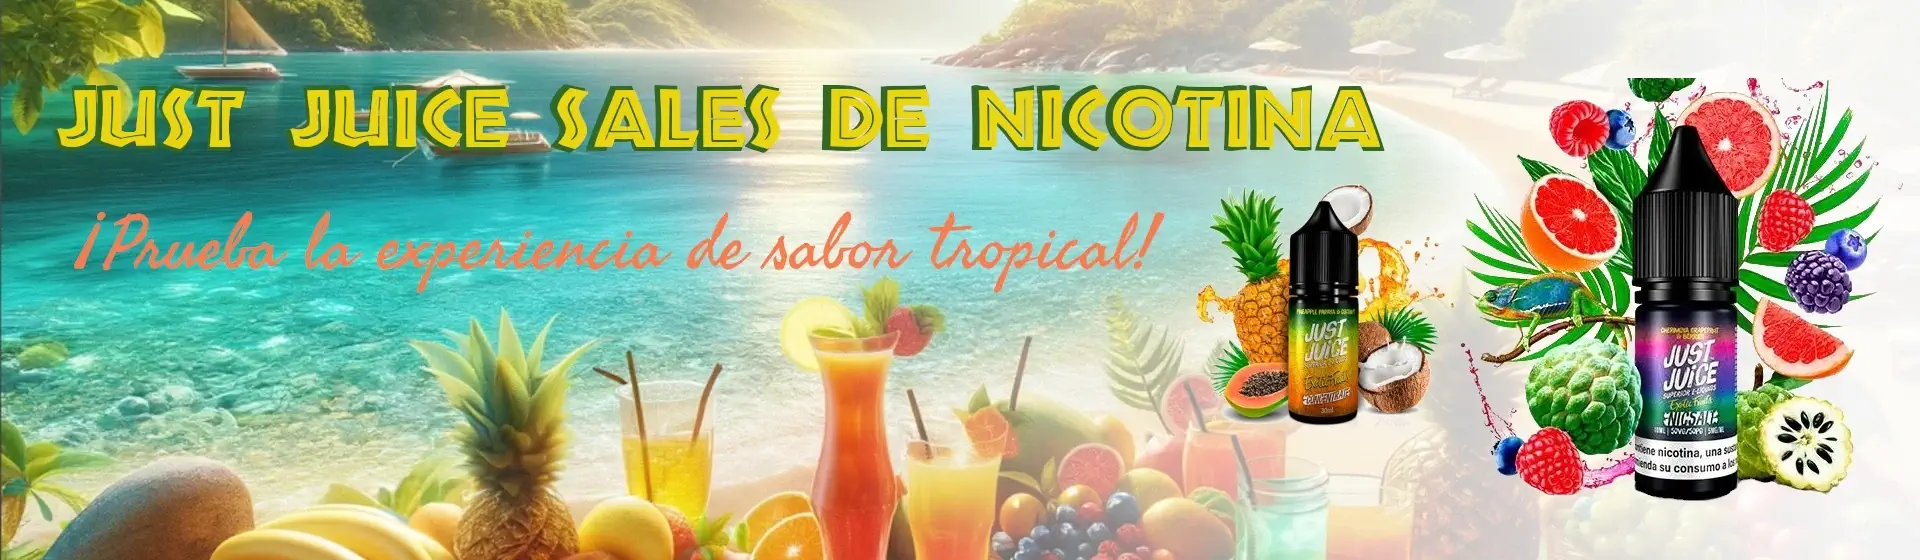 Los sabores tropicales de Just Juice